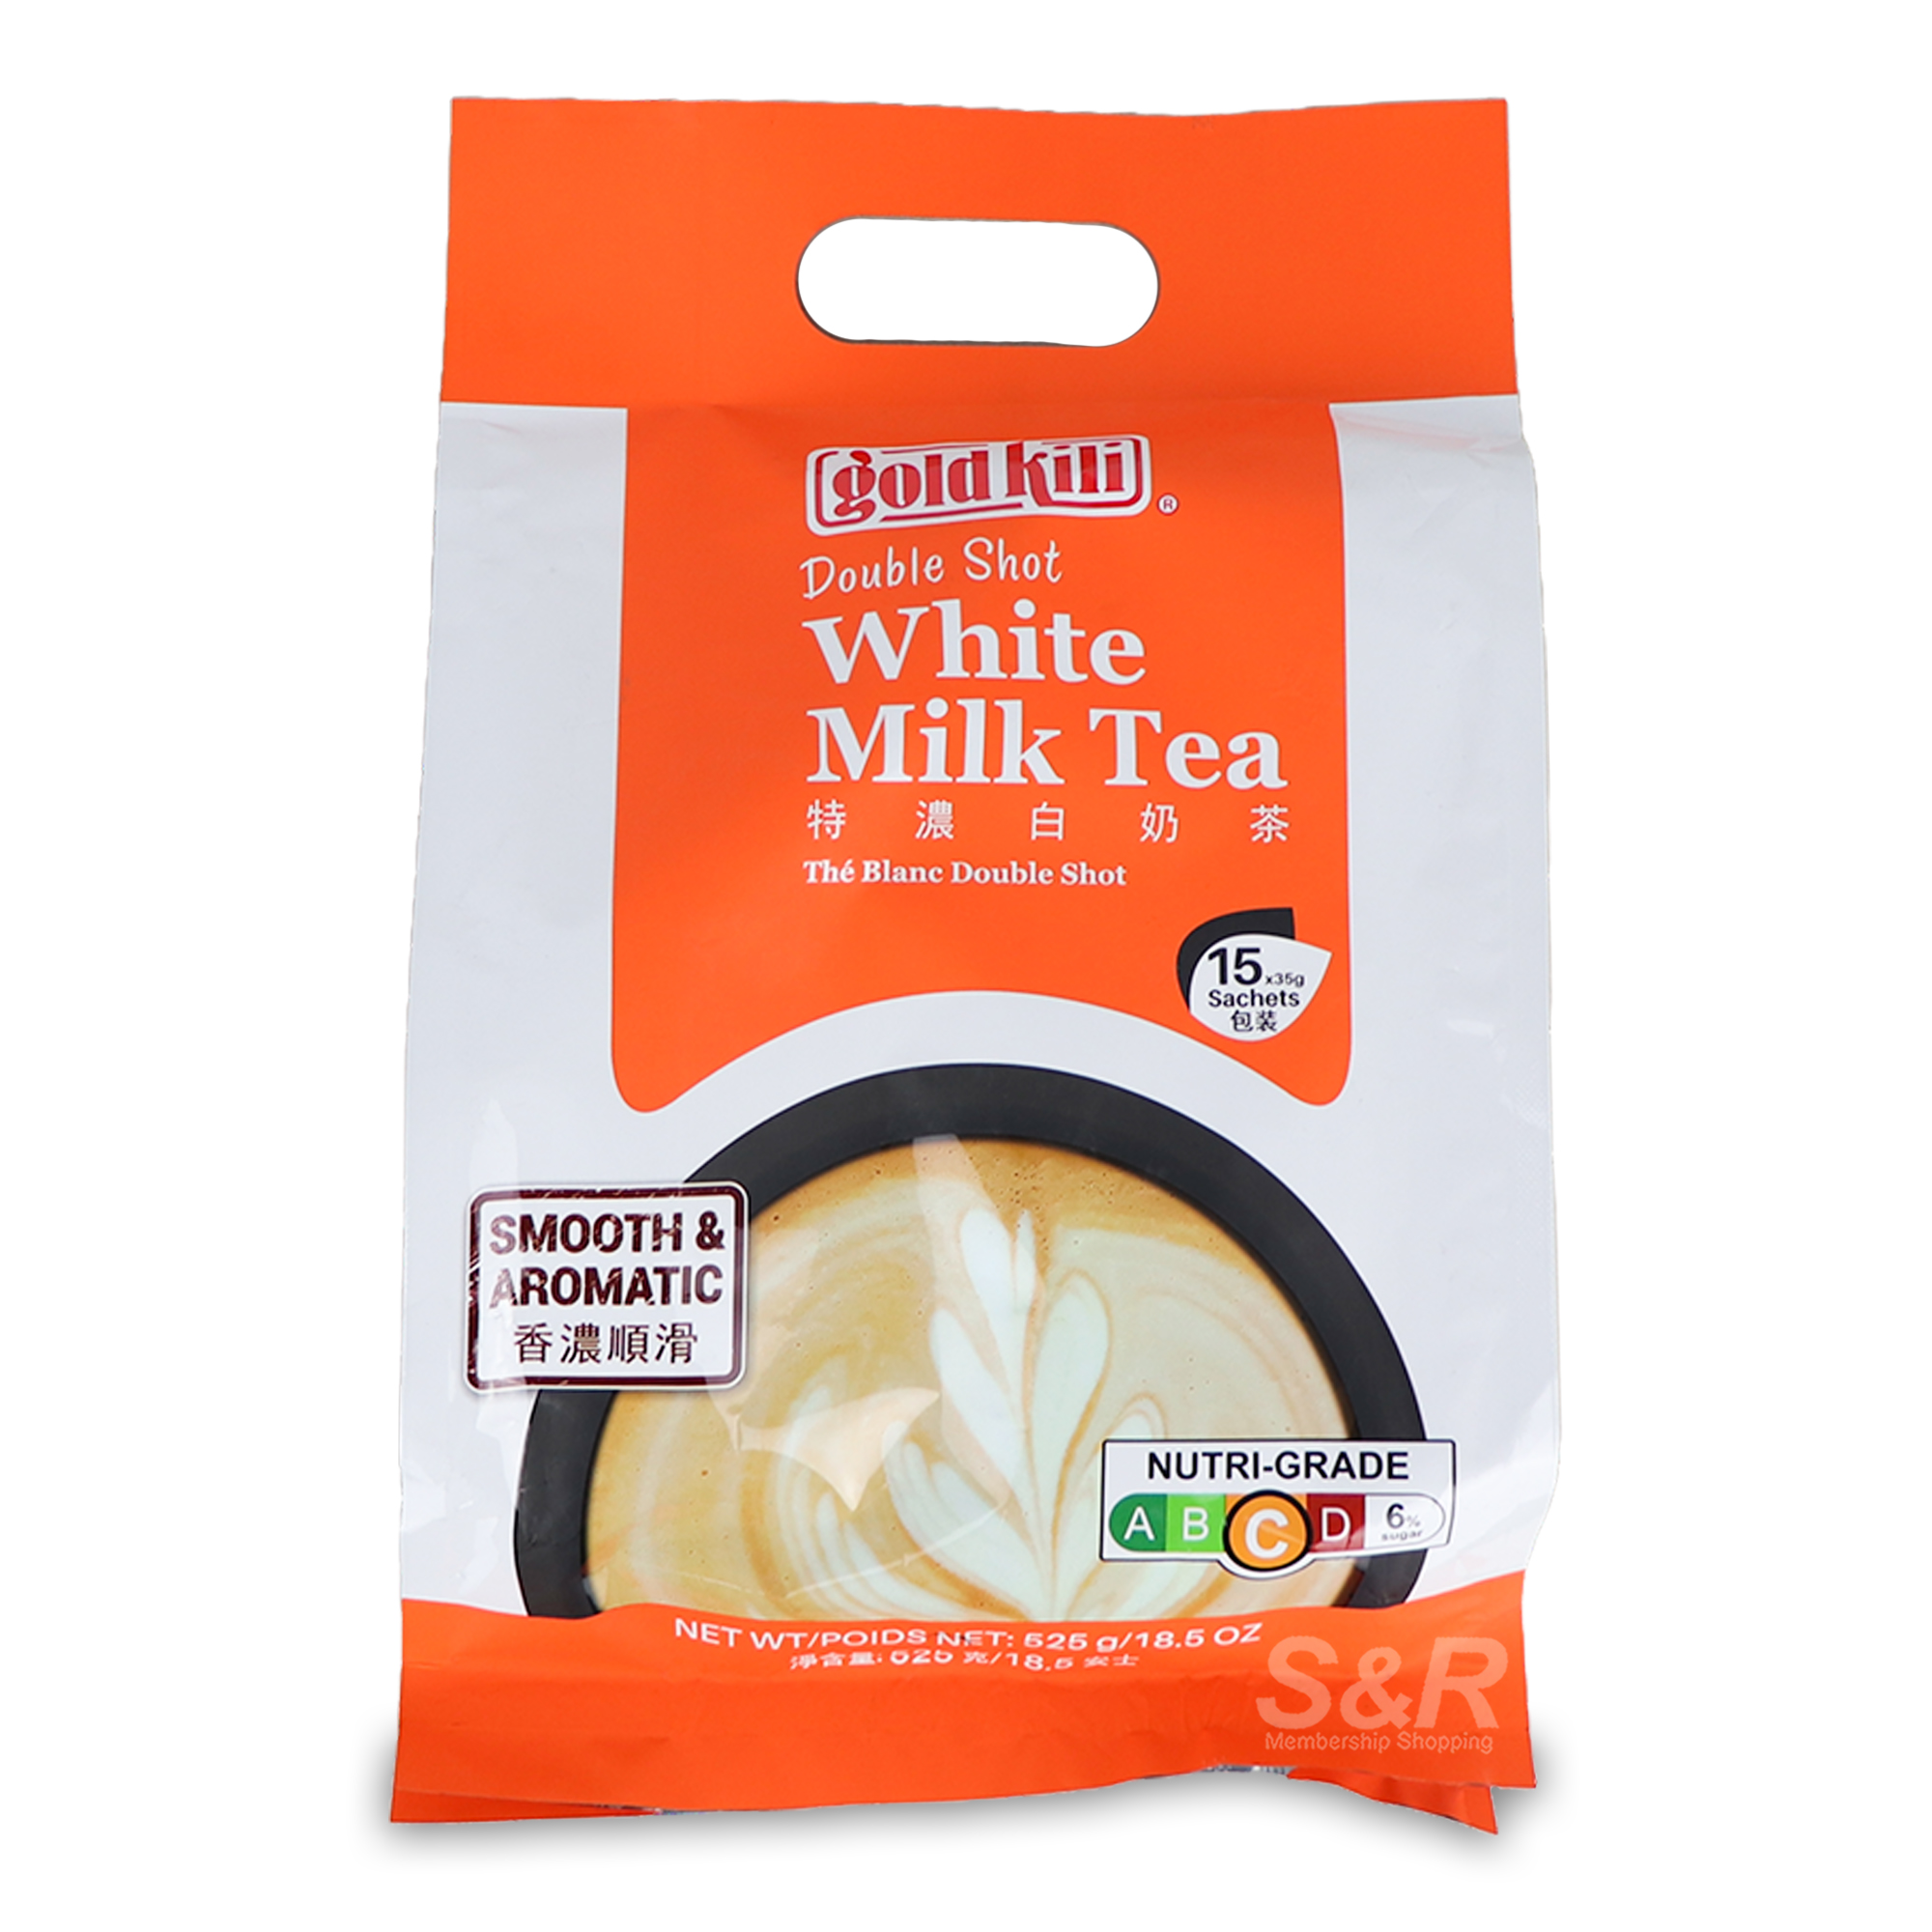 Gold Kili Double Shot White Milk Tea 15pcs x 35g